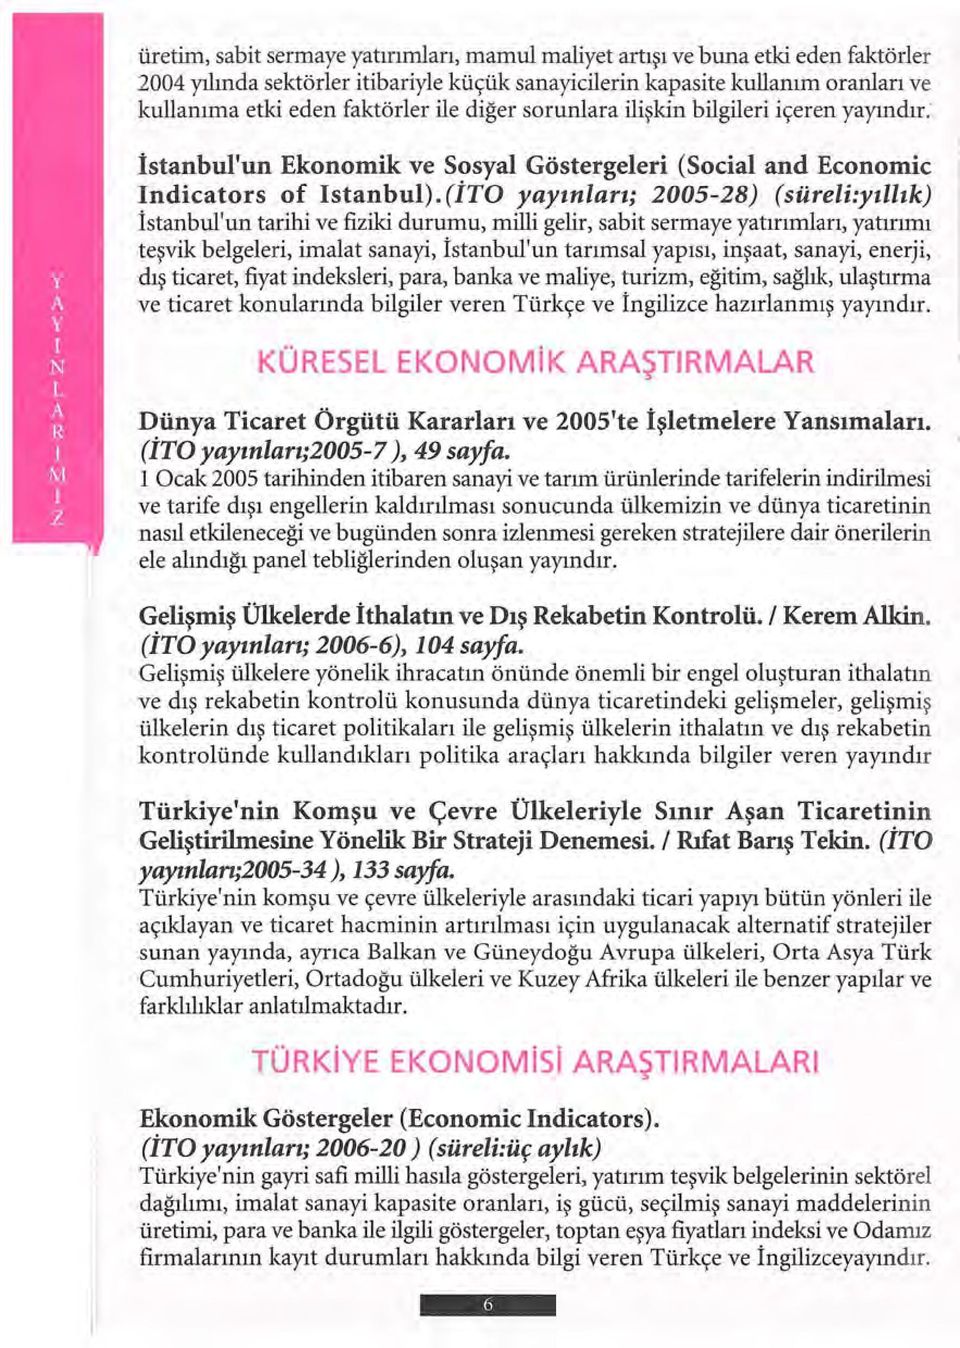 (İTO yayınları; 2005-28) (süreli:yıllık) İstanbul'un tarihi ve fiziki durumu, milli gelir, sabit sermaye yatırımları, yatırımı teşvik belgeleri, imalat sanayi, İstanbul'un tarımsal yapısı, inşaat,